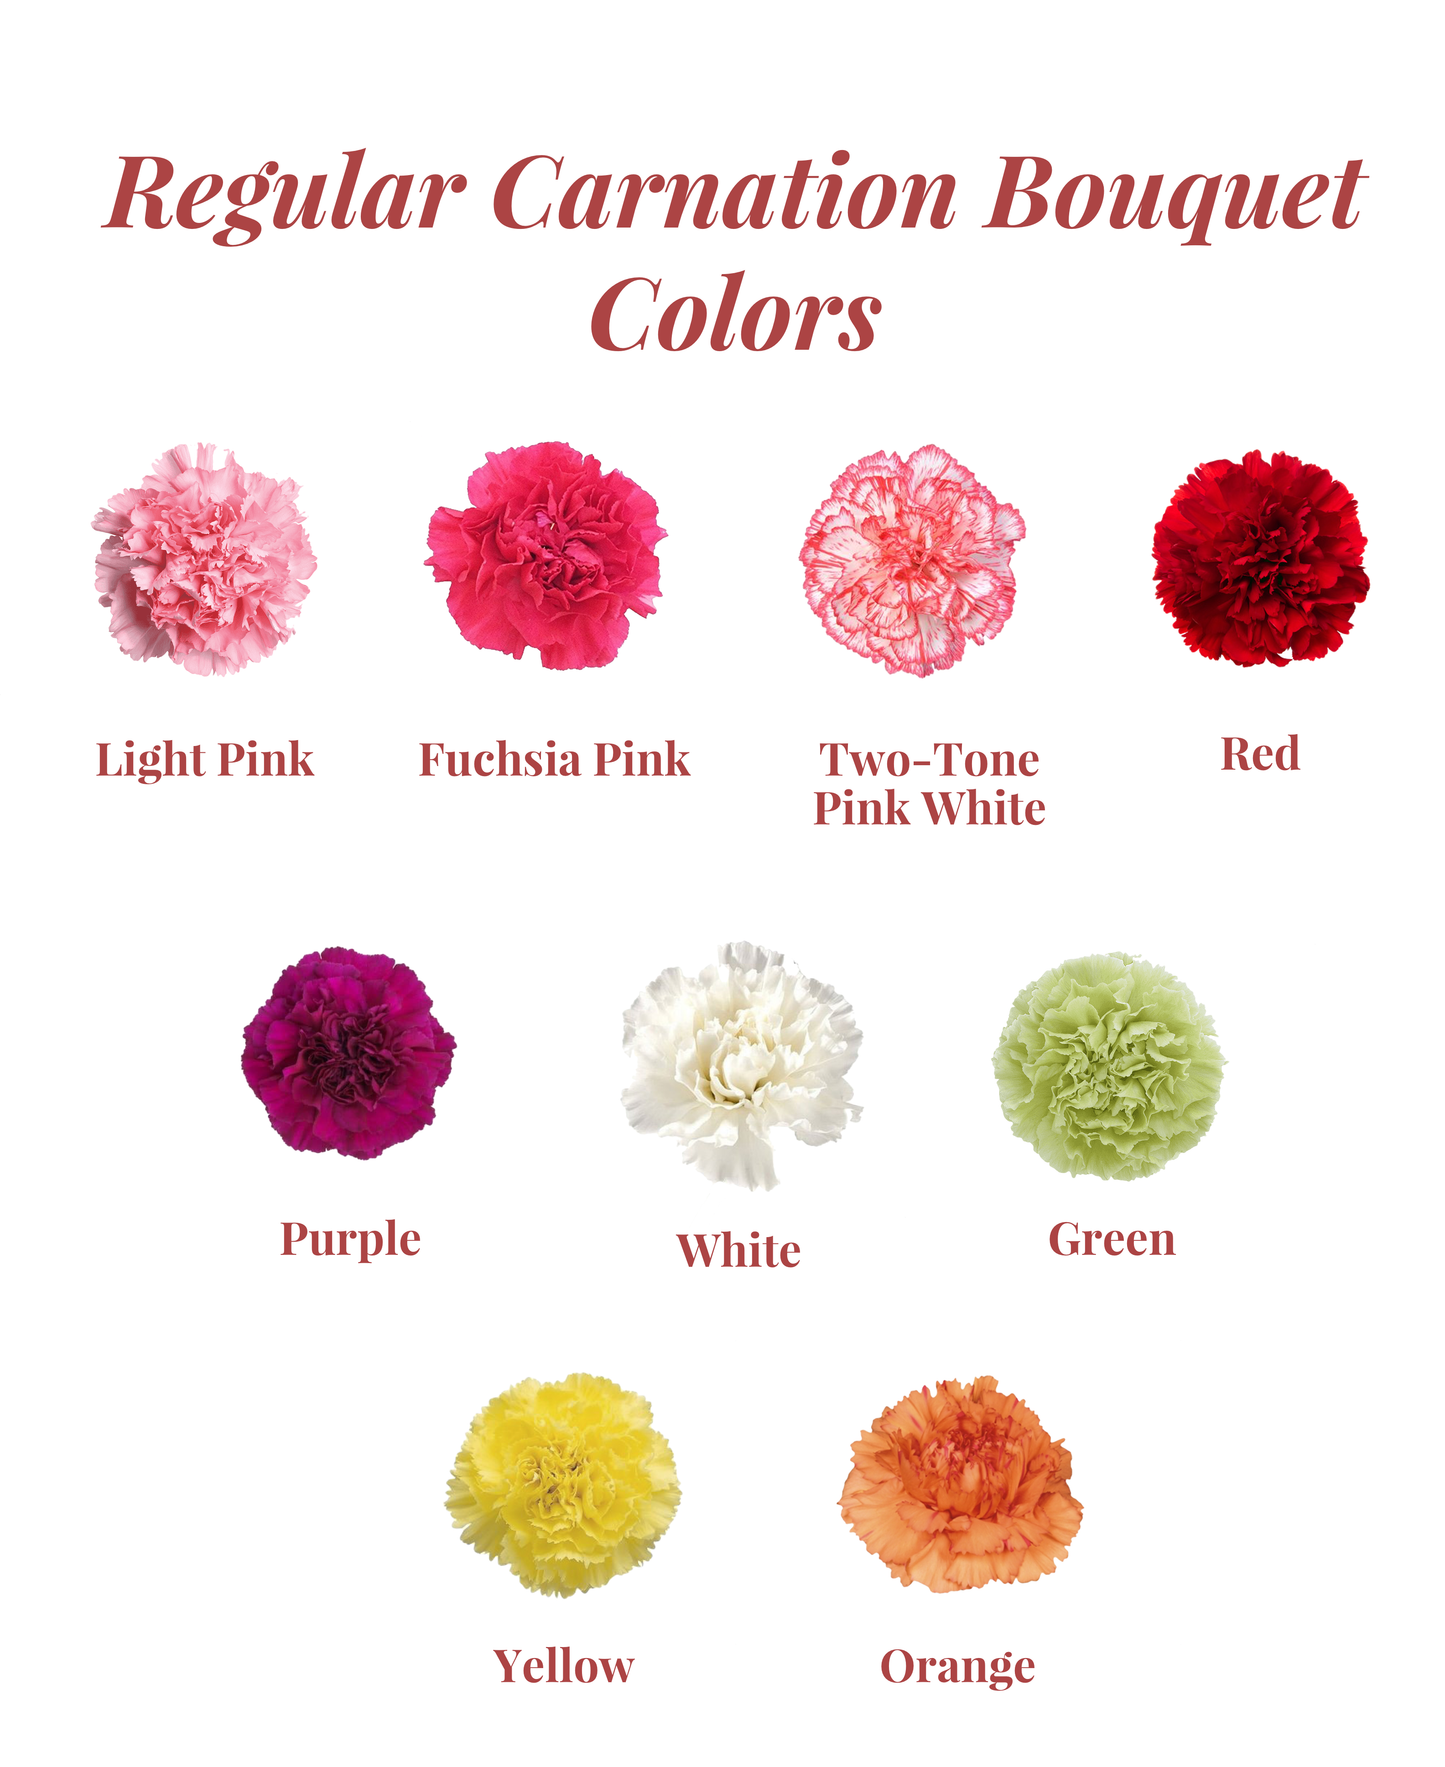 Regular Carnation Bouquet